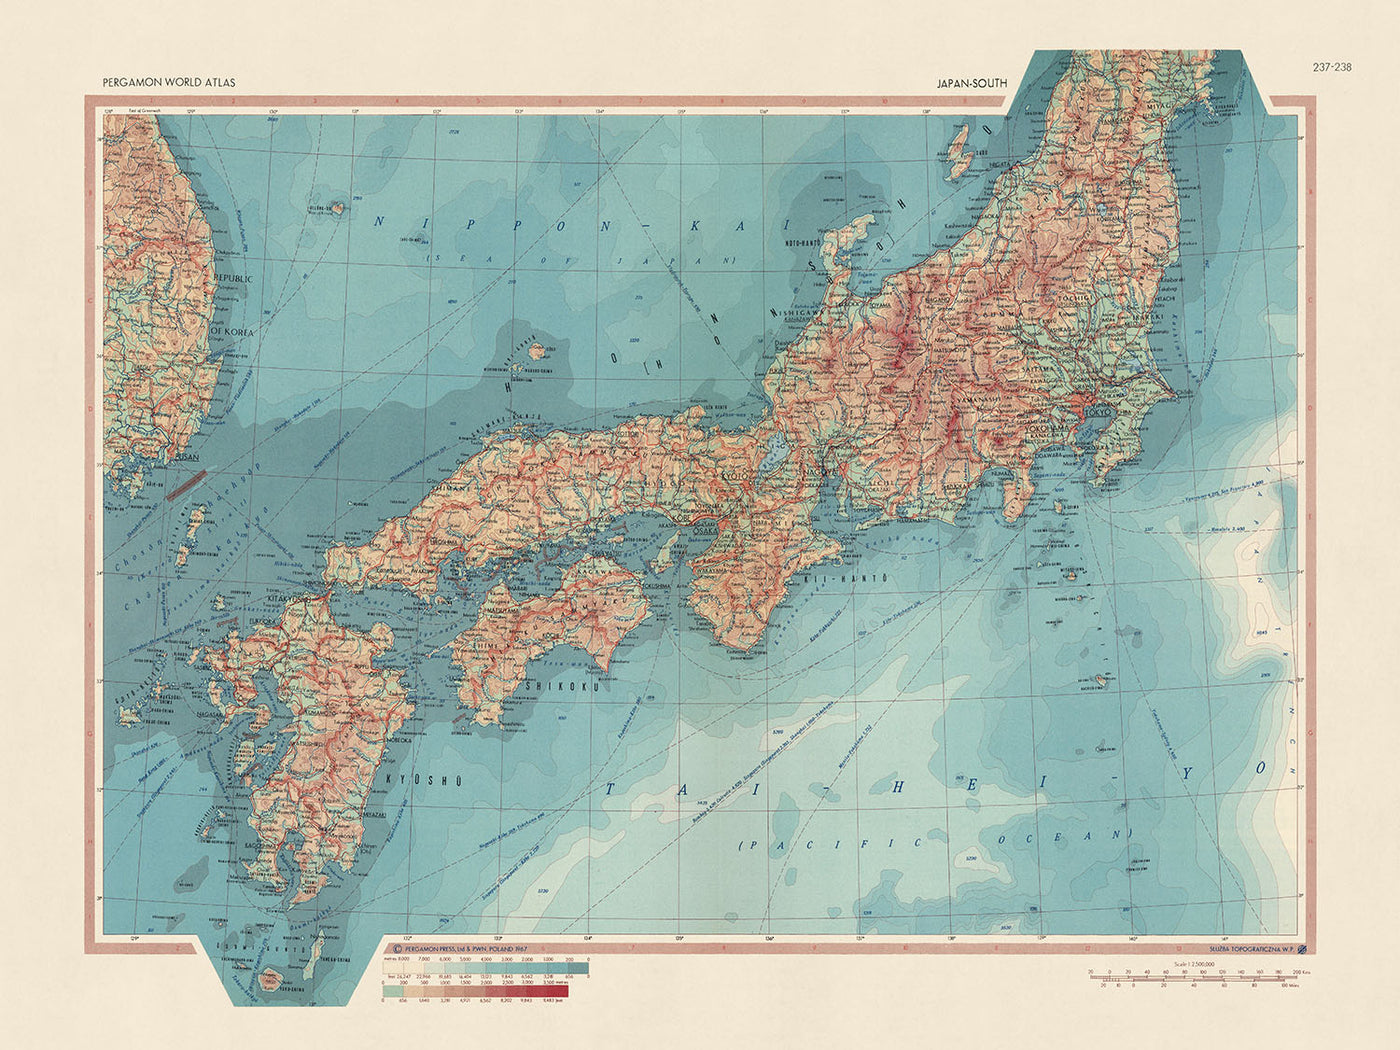 Ancienne carte du Japon par le service topographique de l'armée polonaise, 1967 : Honshu, Shikoku, Kyushu, Yamagata, représentation politique et physique détaillée